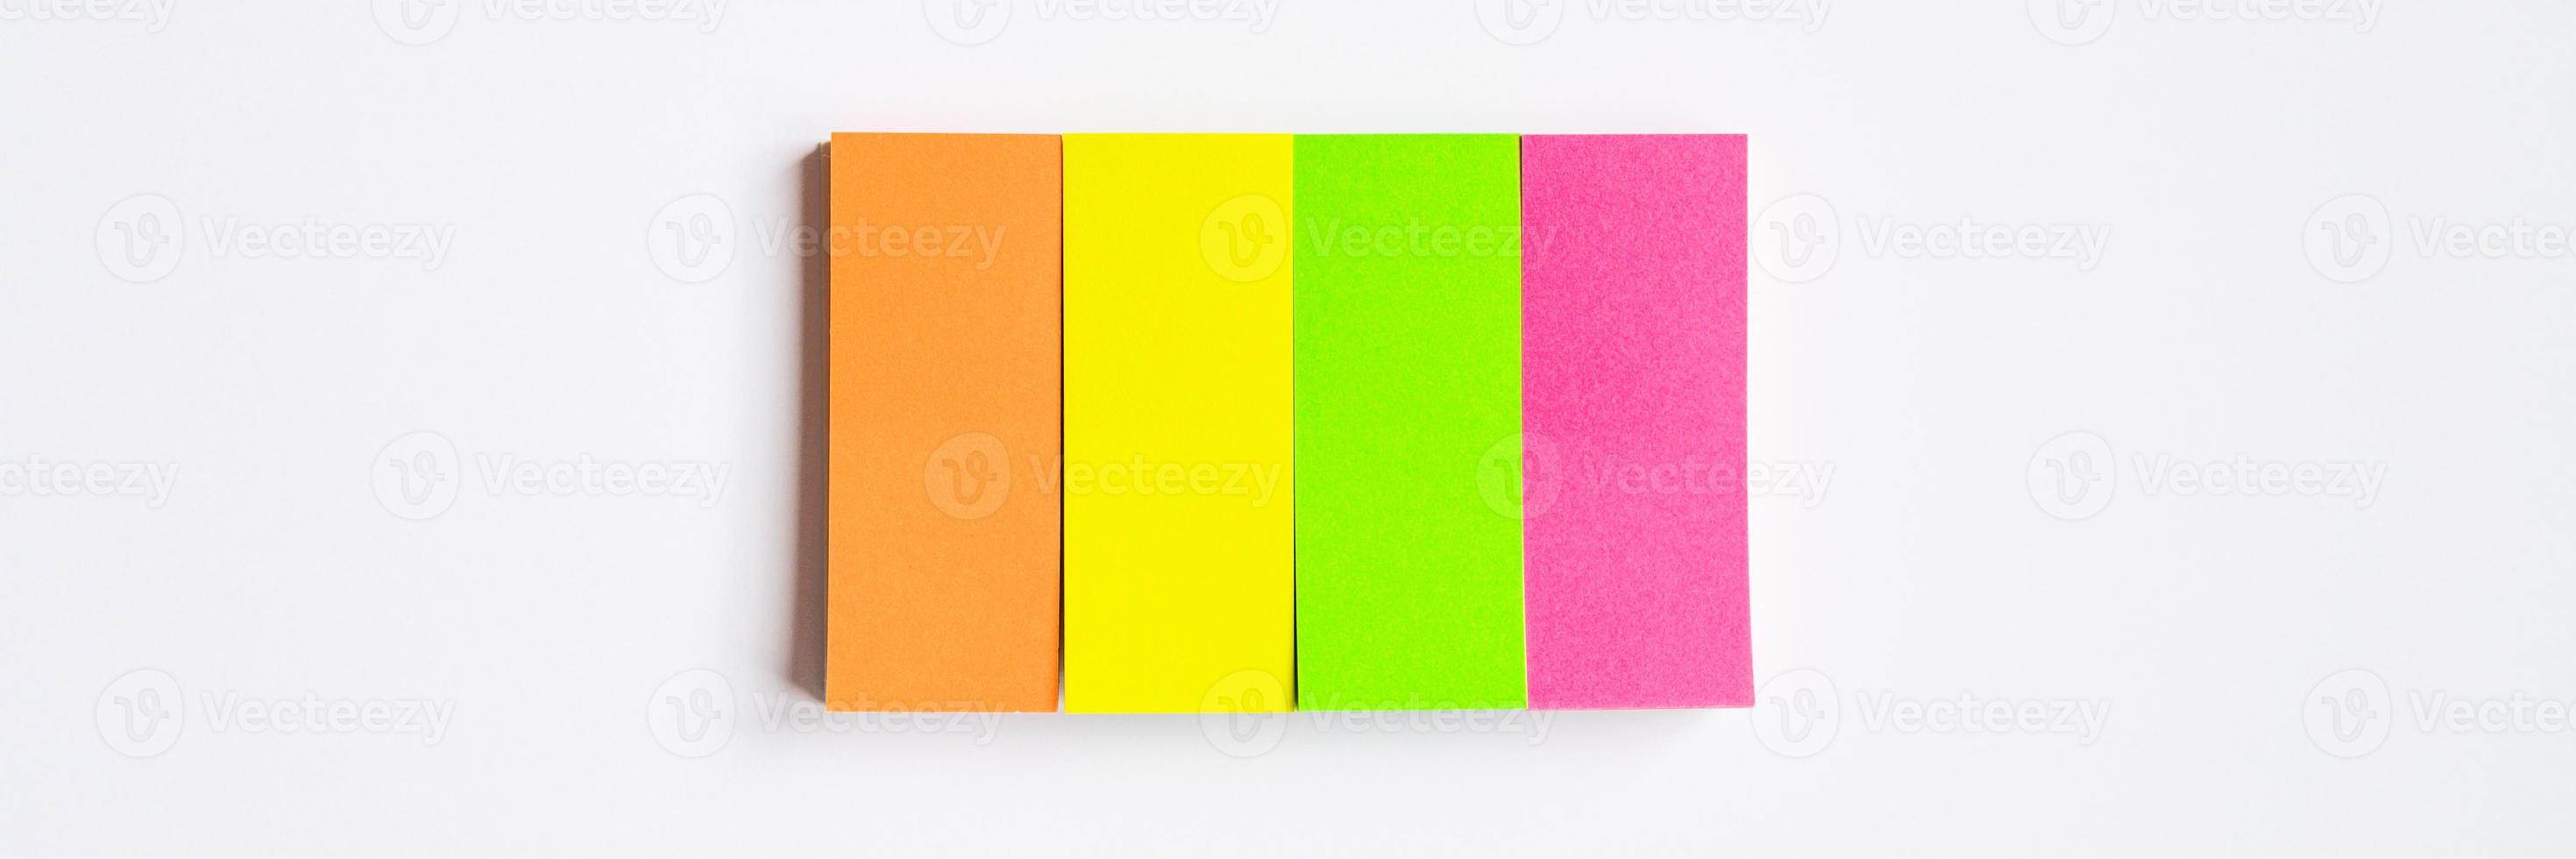 Notas de adesivos multicoloridos em fundo branco foto